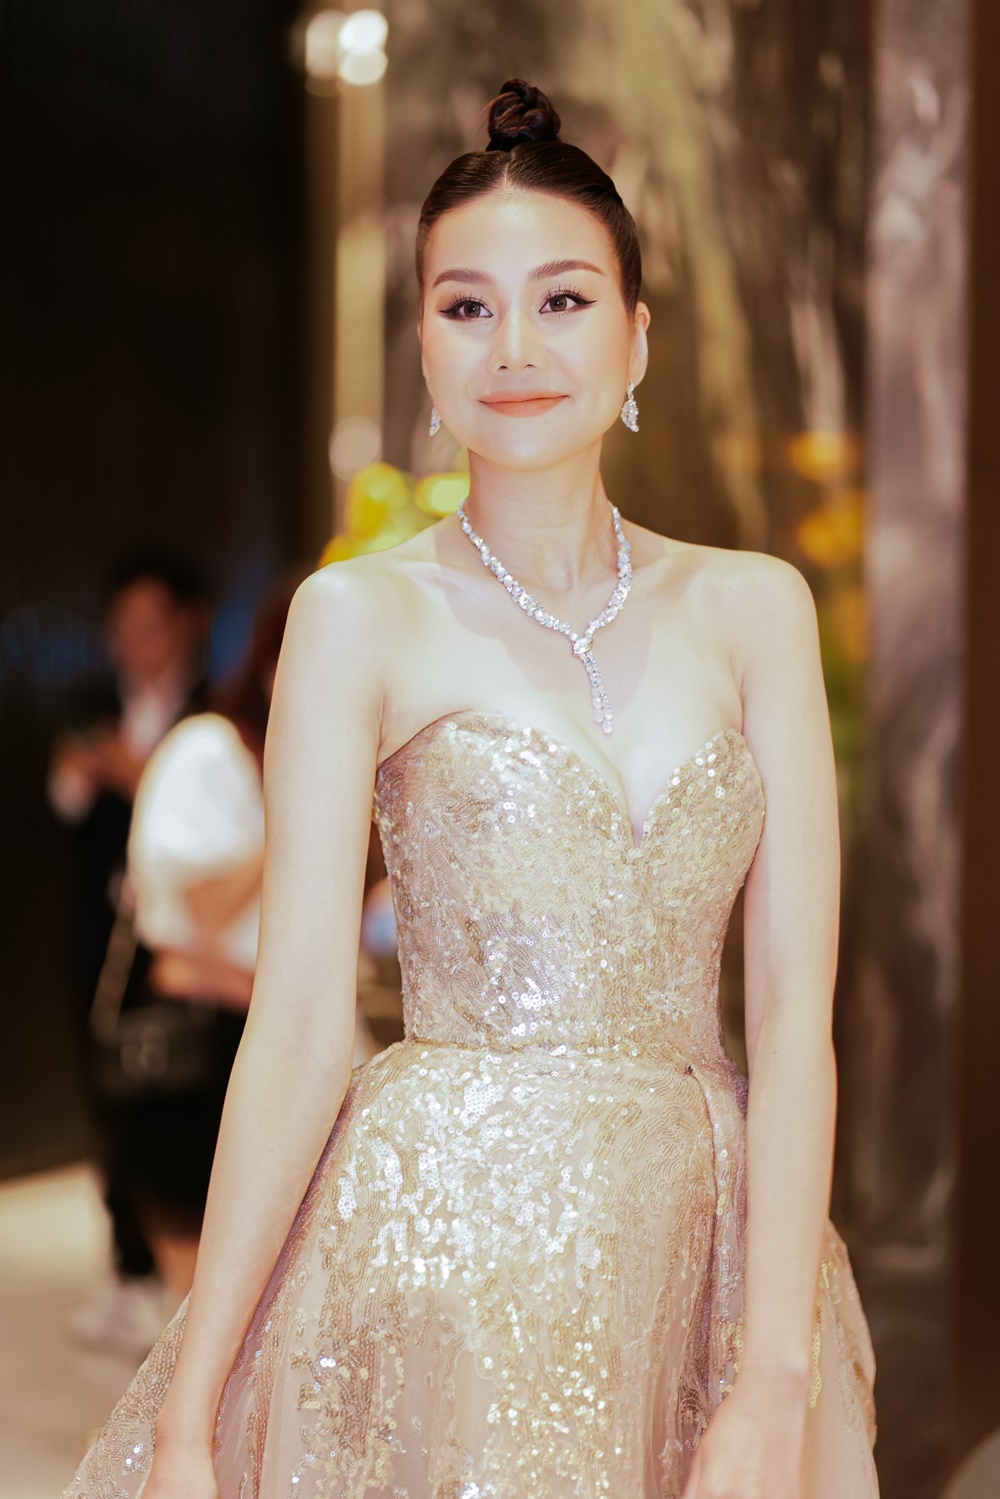 Thanh Hằng xuất hiện lỗng lẫy tựa công chúa trong mẫu váy của NTK đình đám thế giới Elie Saab - ảnh 3